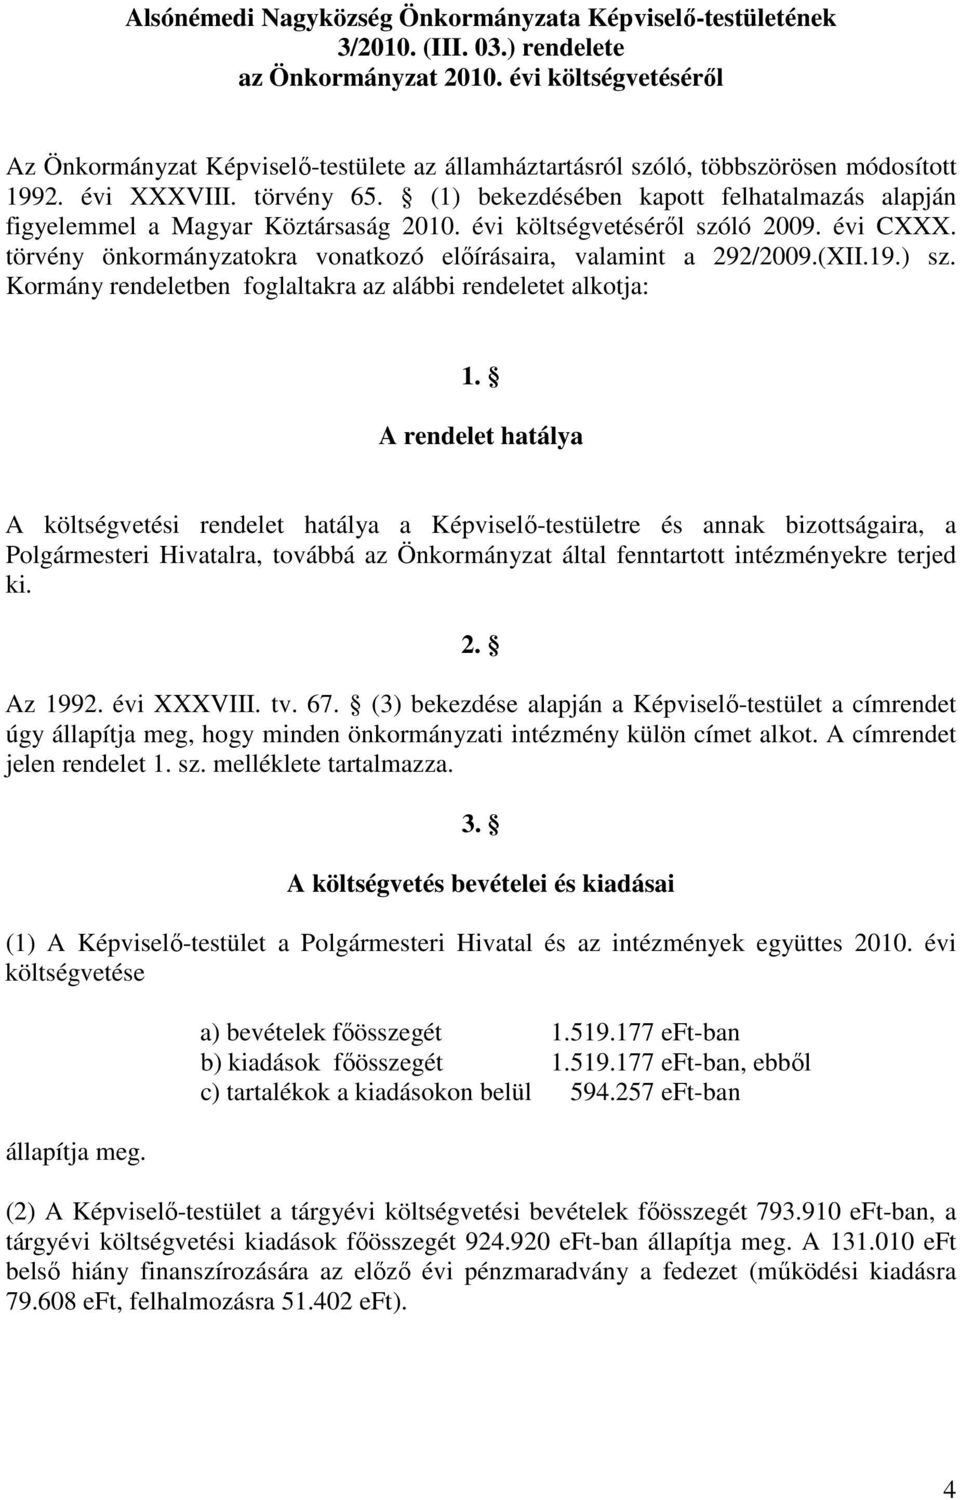 (1) bekezdésében kapott felhatalmazás alapján figyelemmel a Magyar Köztársaság 2010. évi költségvetésérıl szóló 2009. évi CXXX. törvény önkormányzatokra vonatkozó elıírásaira, valamint a 292/2009.